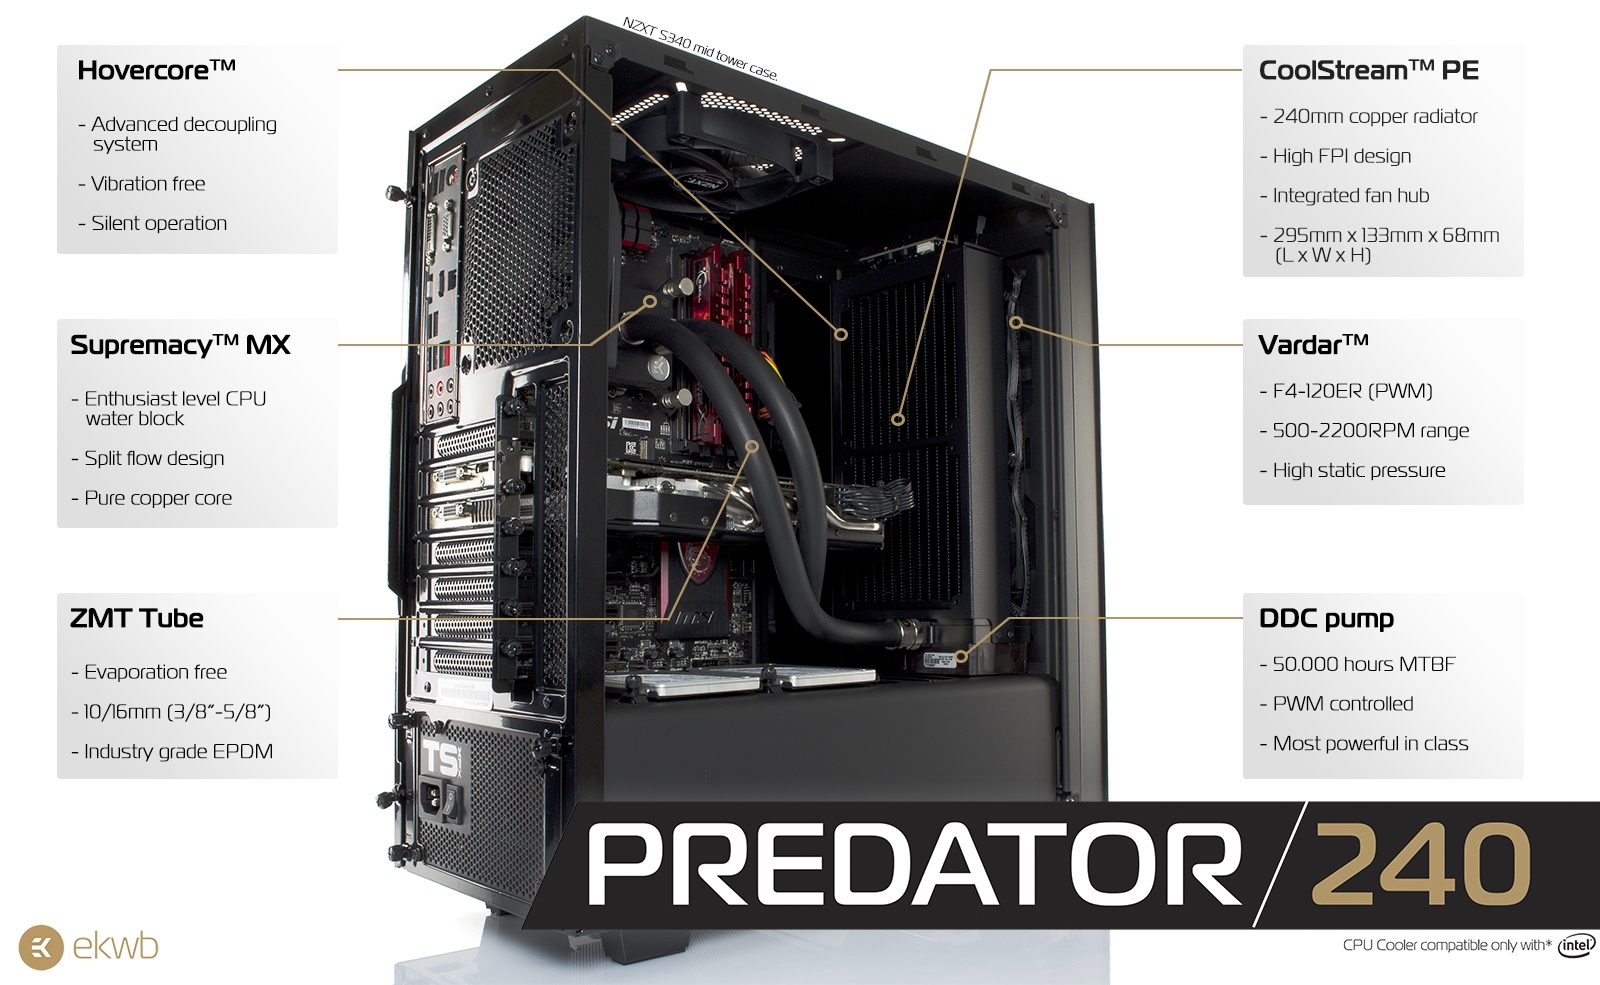 EK-Predator 240 features